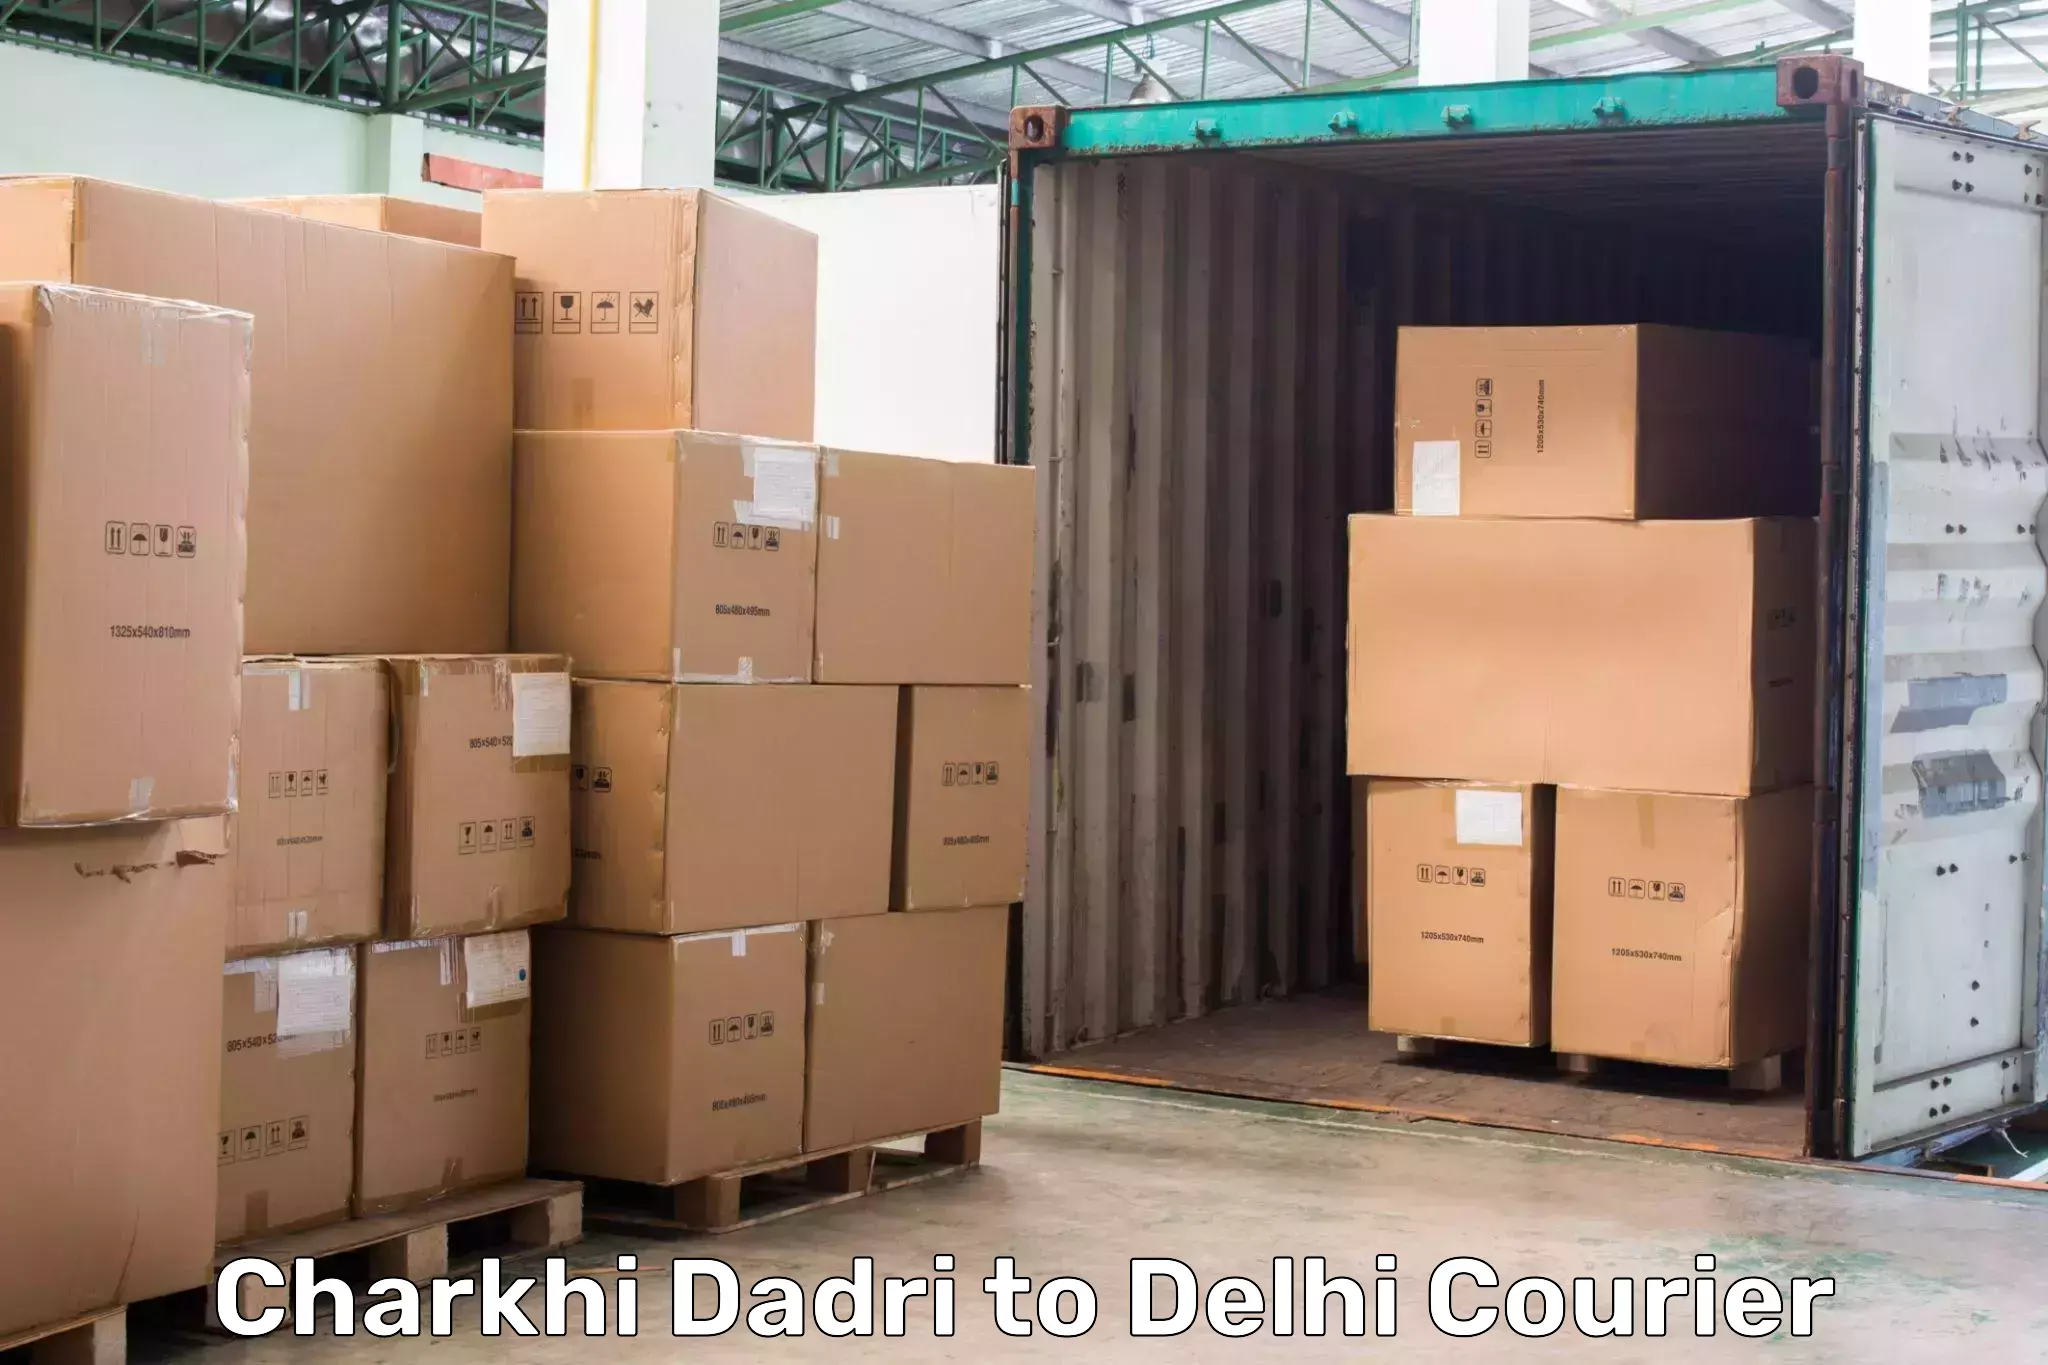 Fast shipping solutions Charkhi Dadri to NIT Delhi